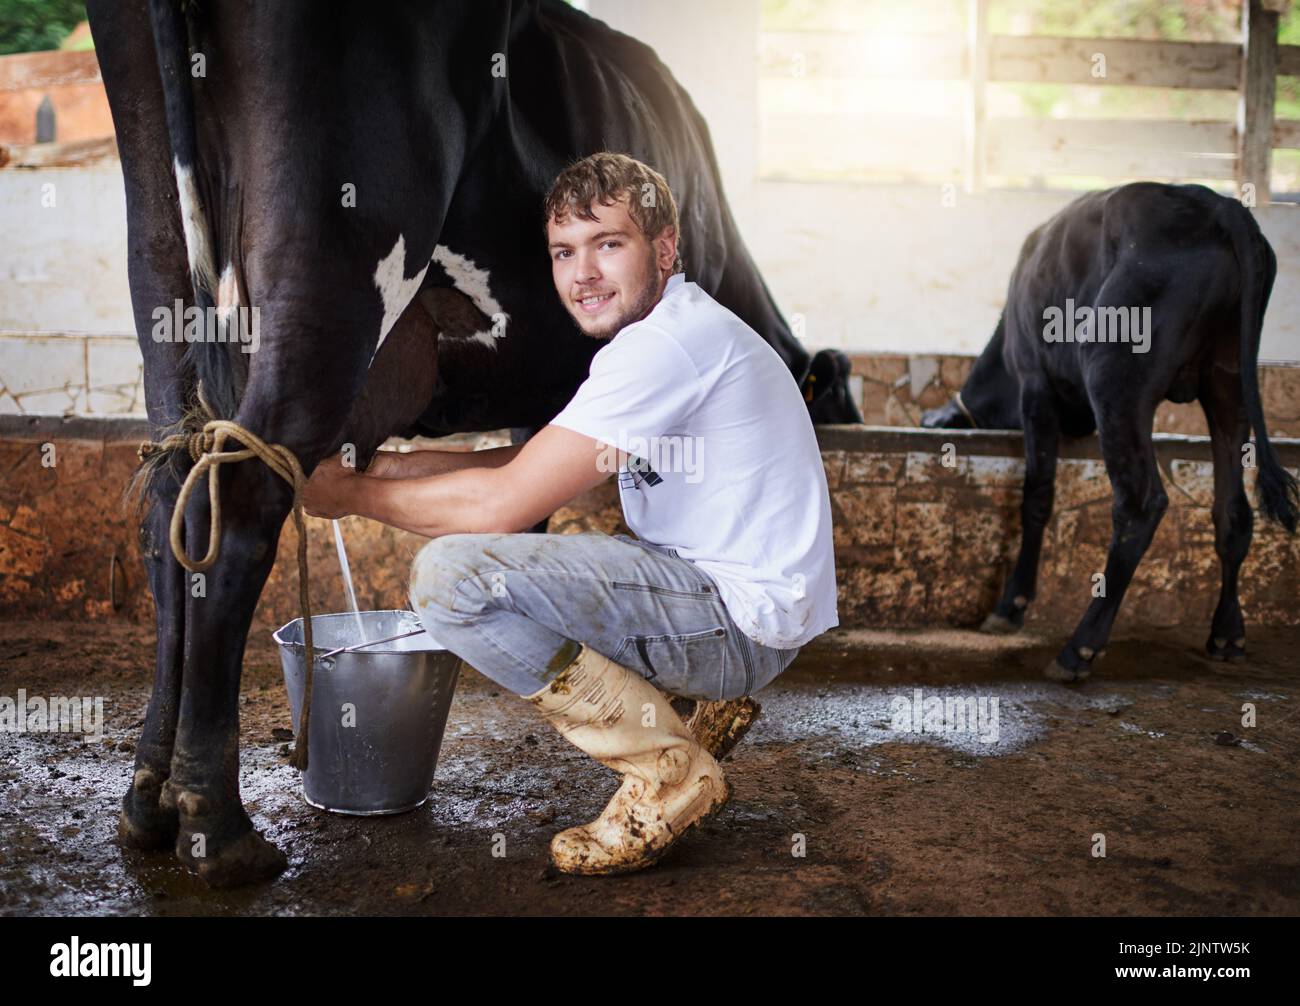 Im quasi fatto mungere questa mucca. Ritratto integrale di un giovane maschio mungente di una mucca nel fienile. Foto Stock